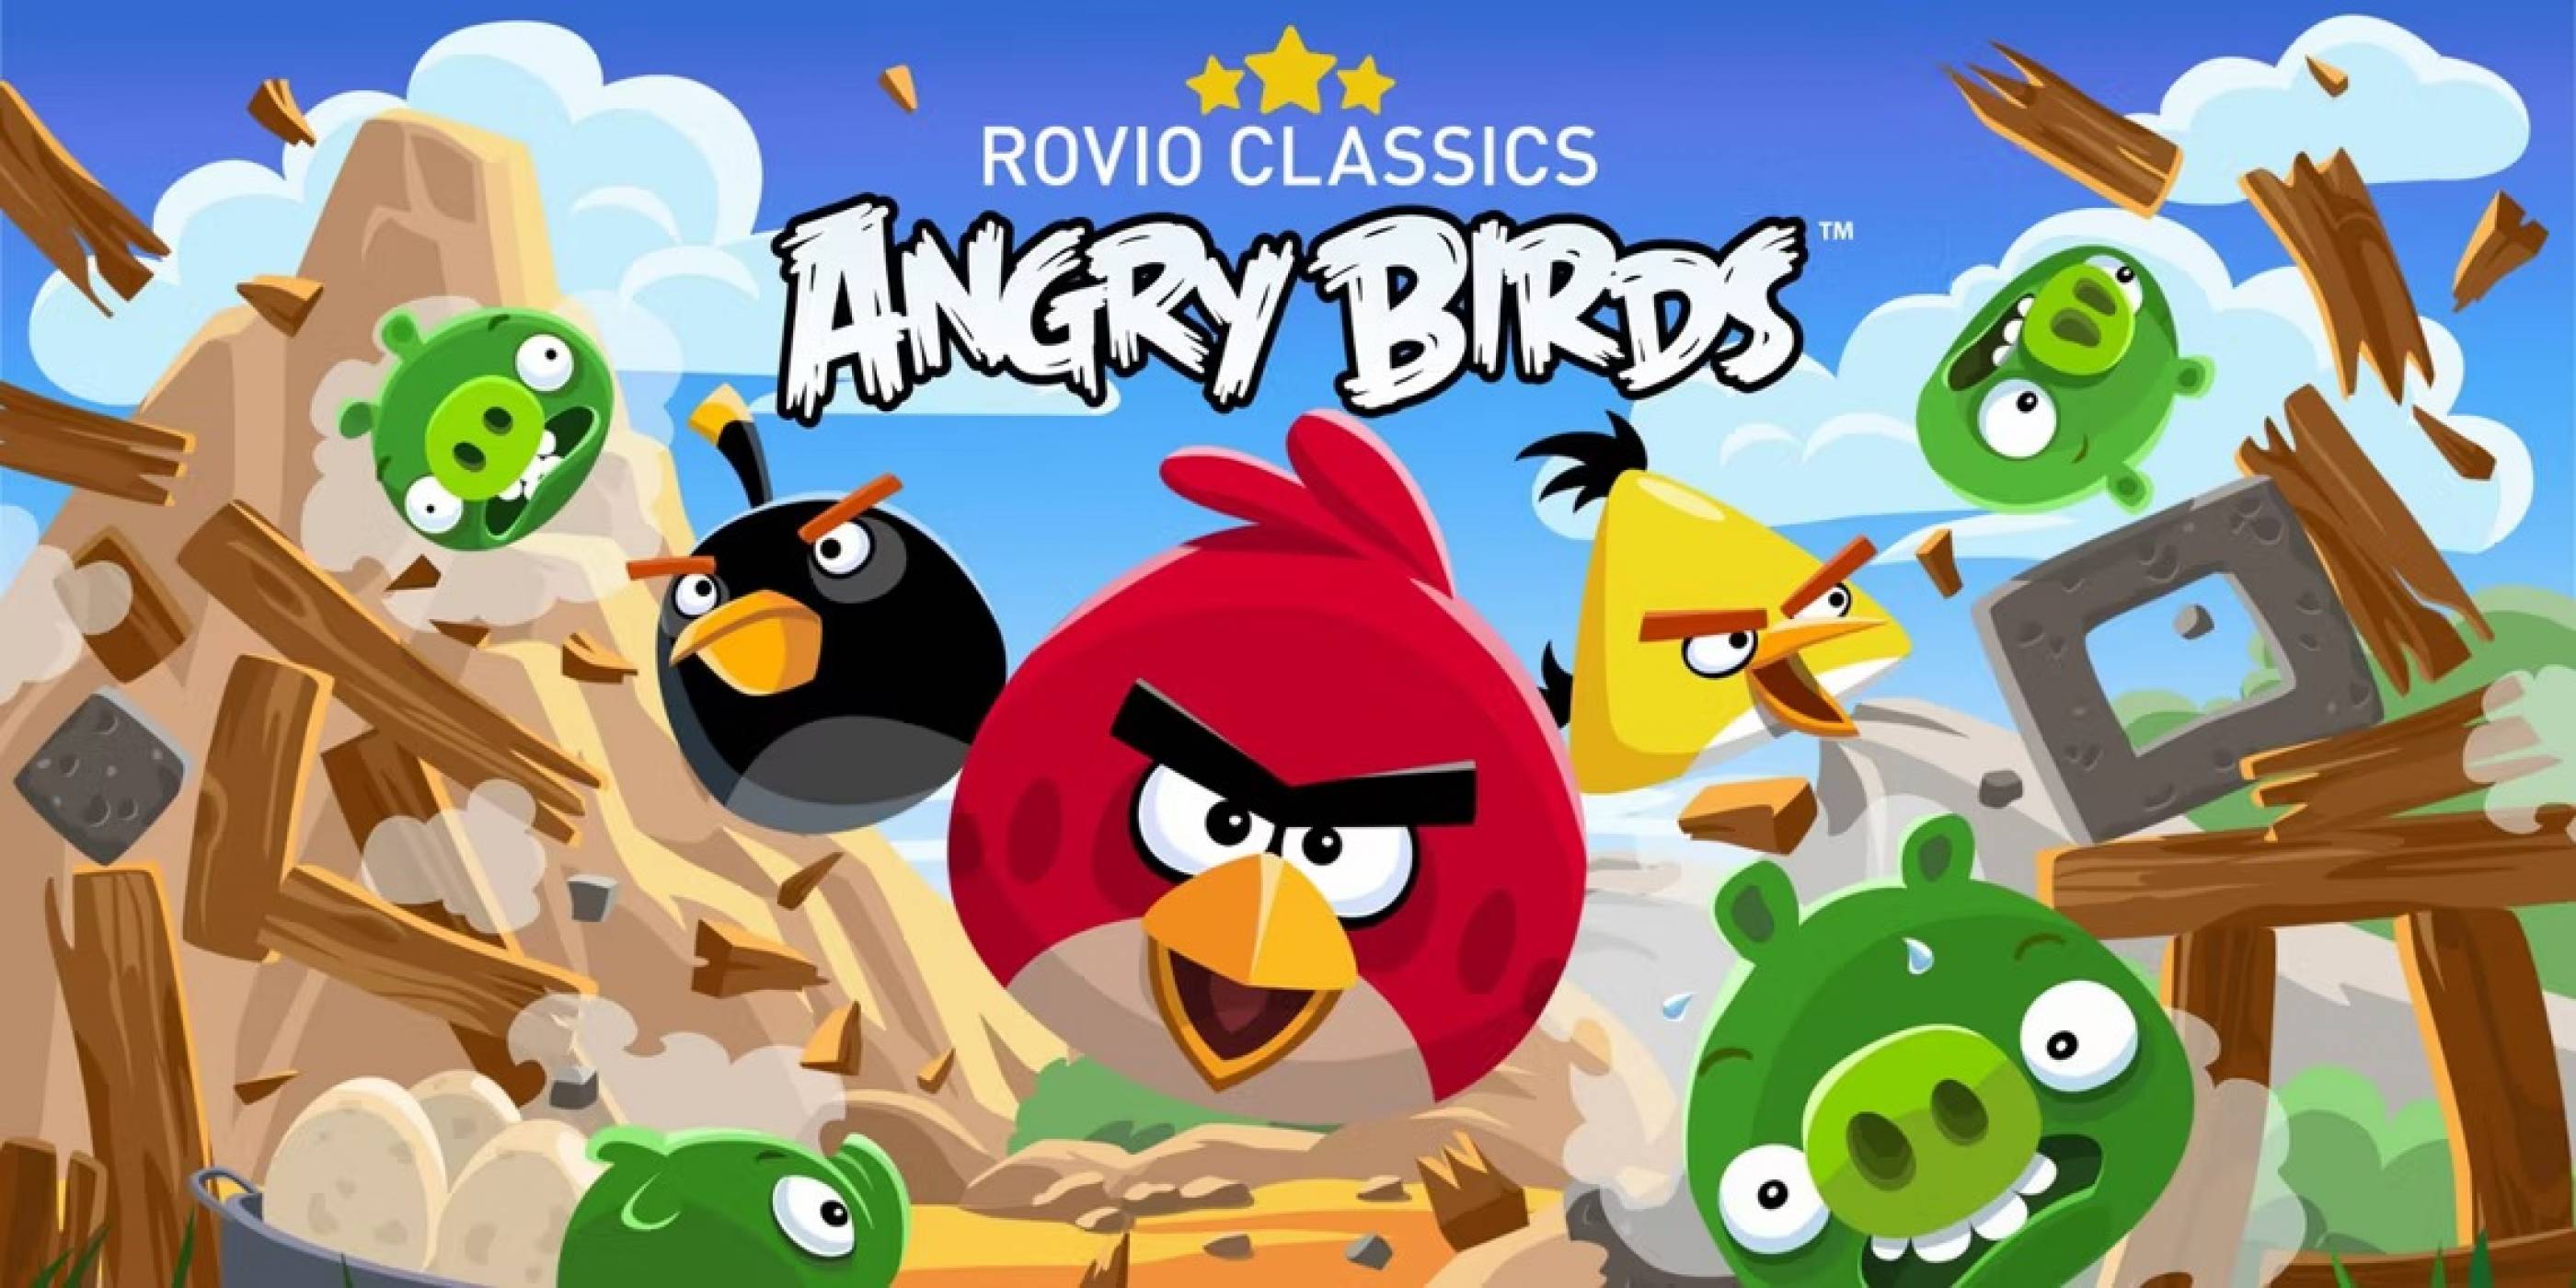 Класиката Angry Birds може да се завърне под друго име